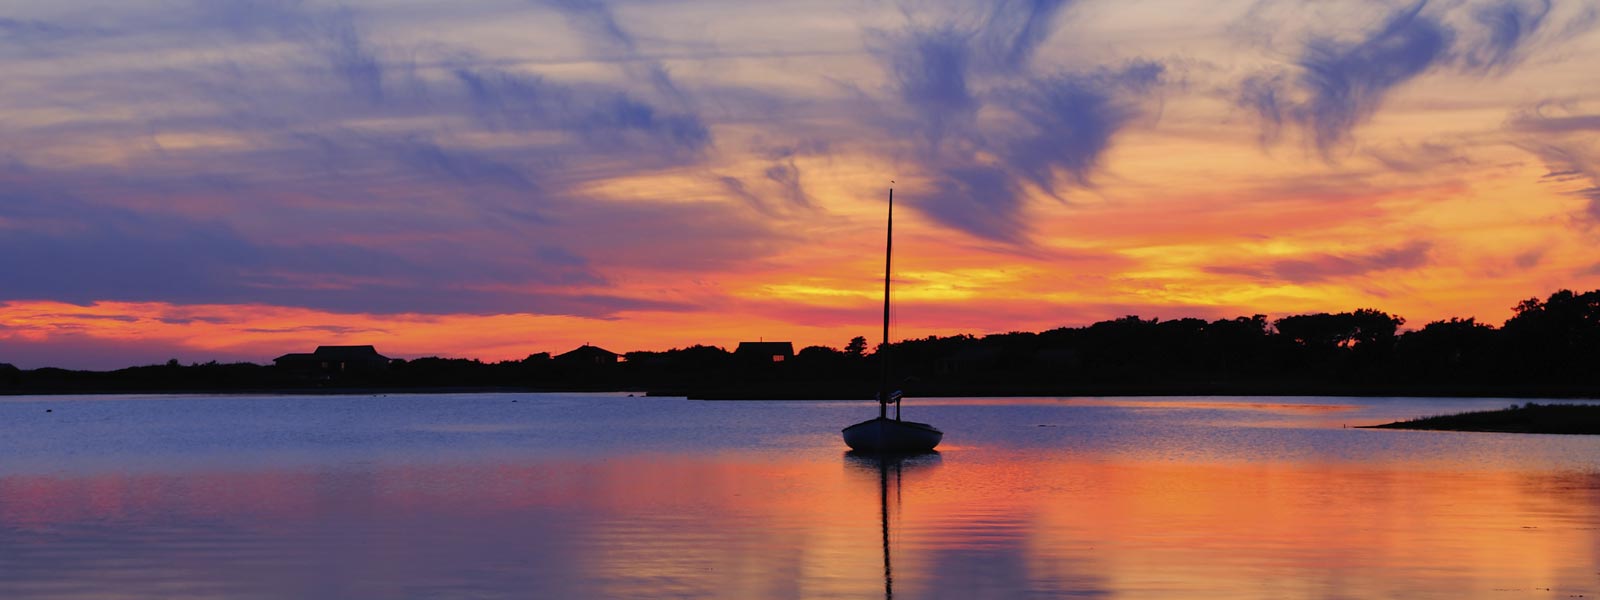 Sail boat at sunset.